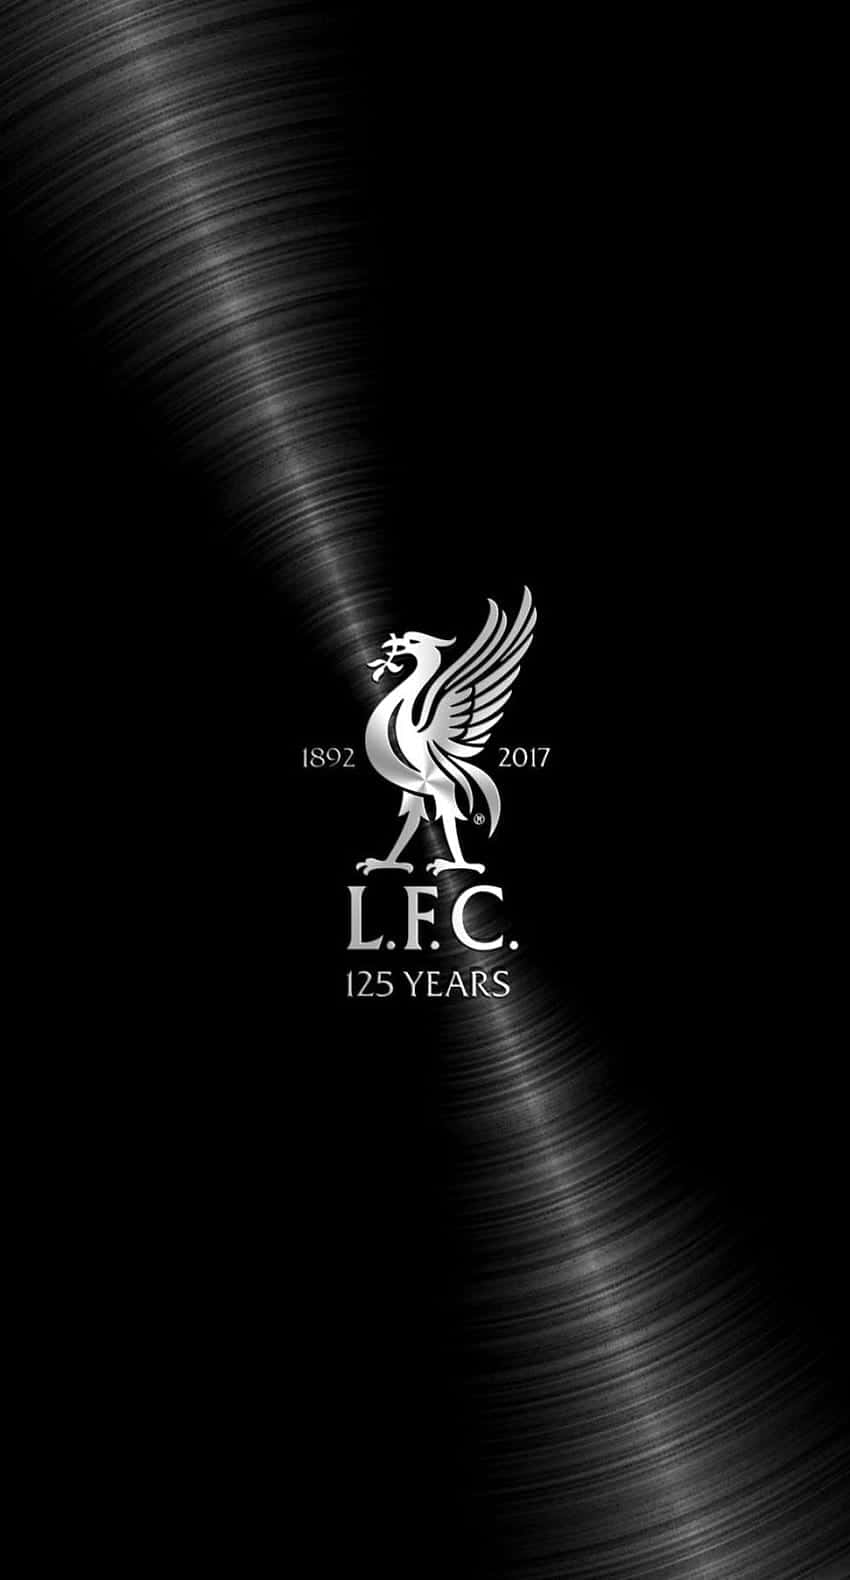 Logotipodel Liverpool Fc Sobre Un Fondo Negro Fondo de pantalla